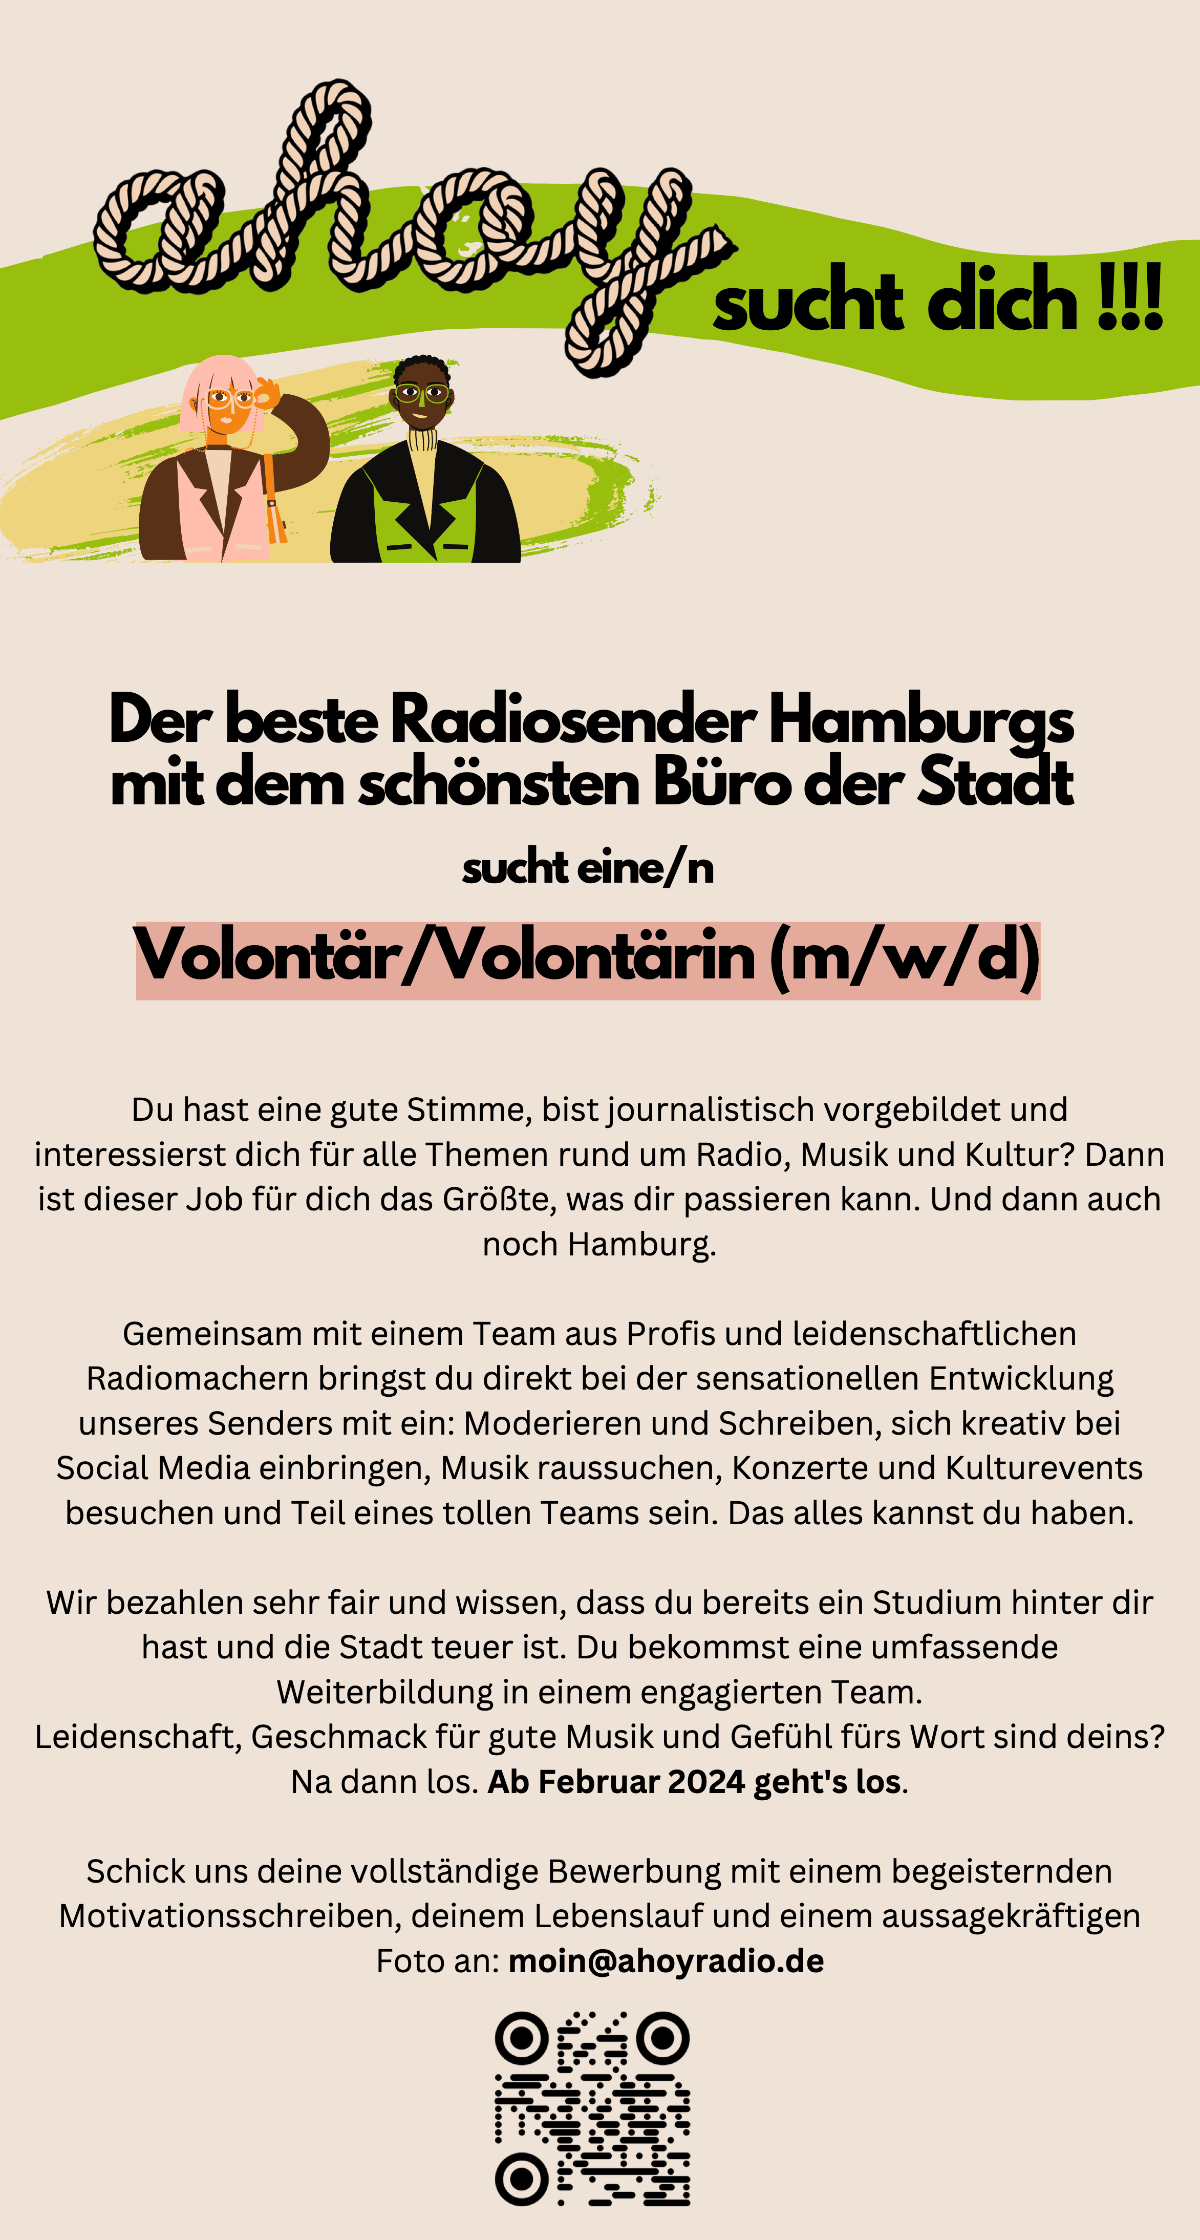 ahoy – der beste Radiosender Hamburgs mit dem schönsten Büro der Stadt – sucht eine/n Volontär/Volontärin (m/w/d).